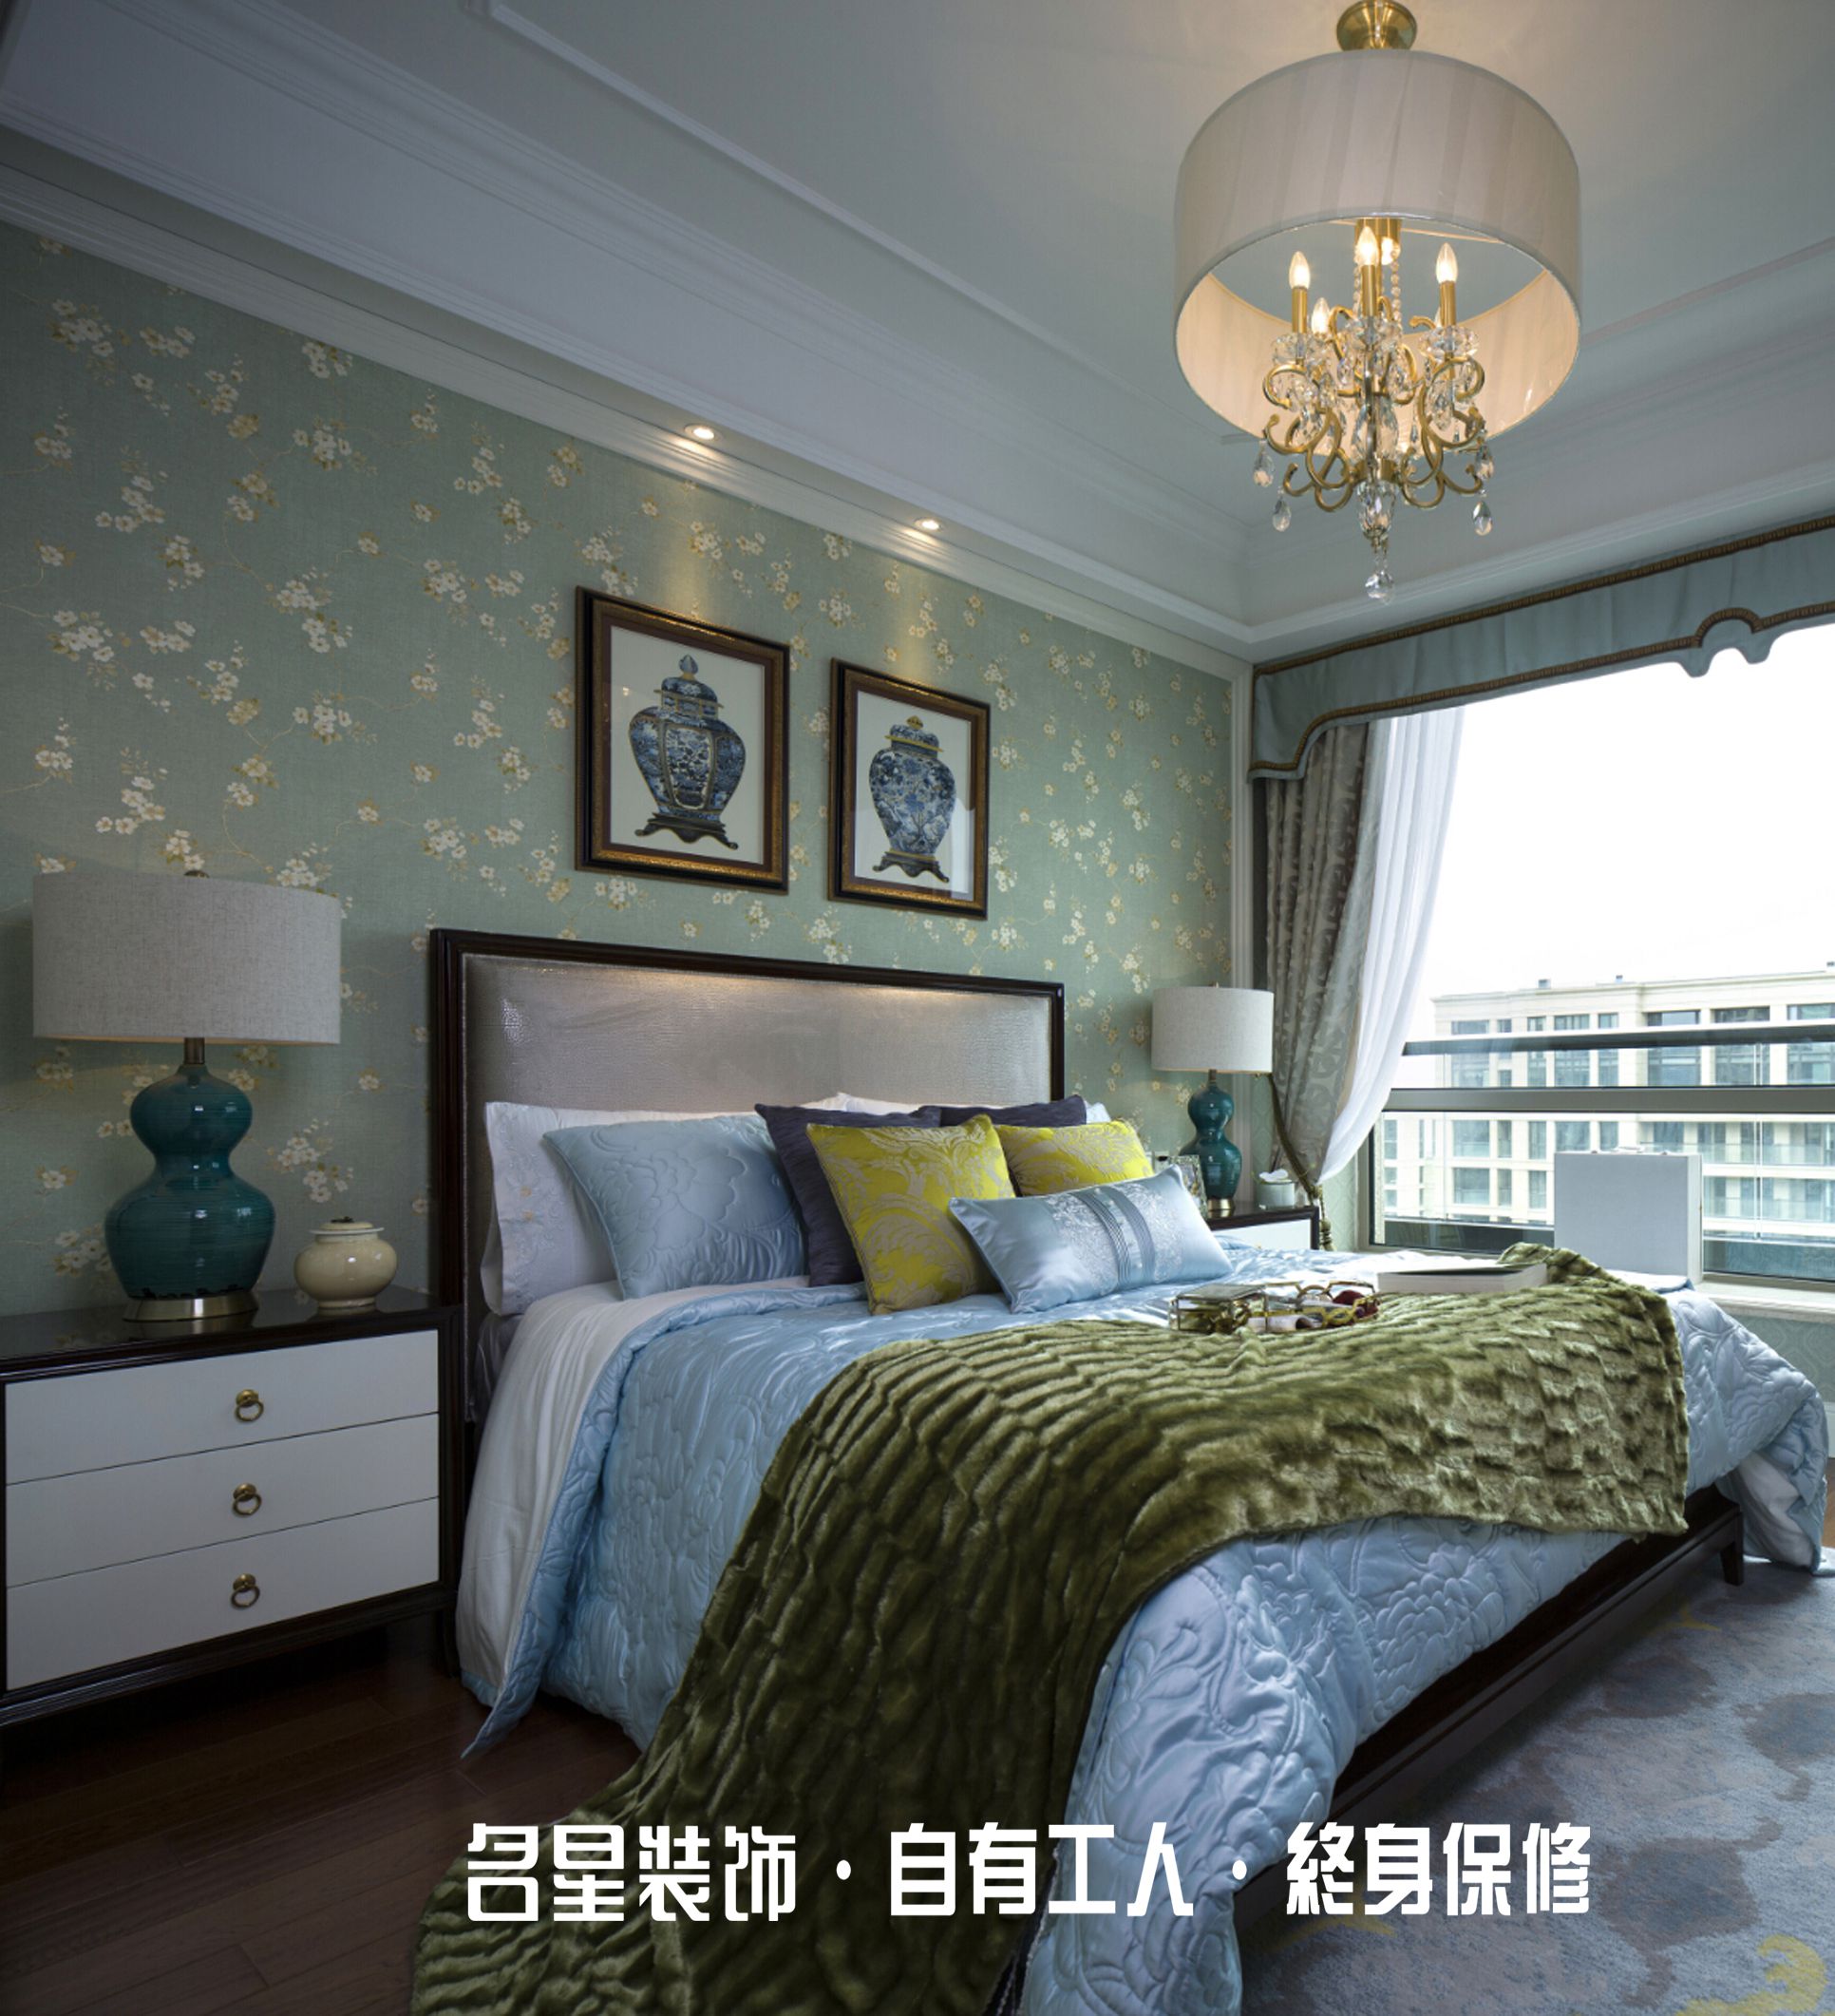 二居 欧式 卧室图片来自名星装饰在福星惠誉红桥城的分享